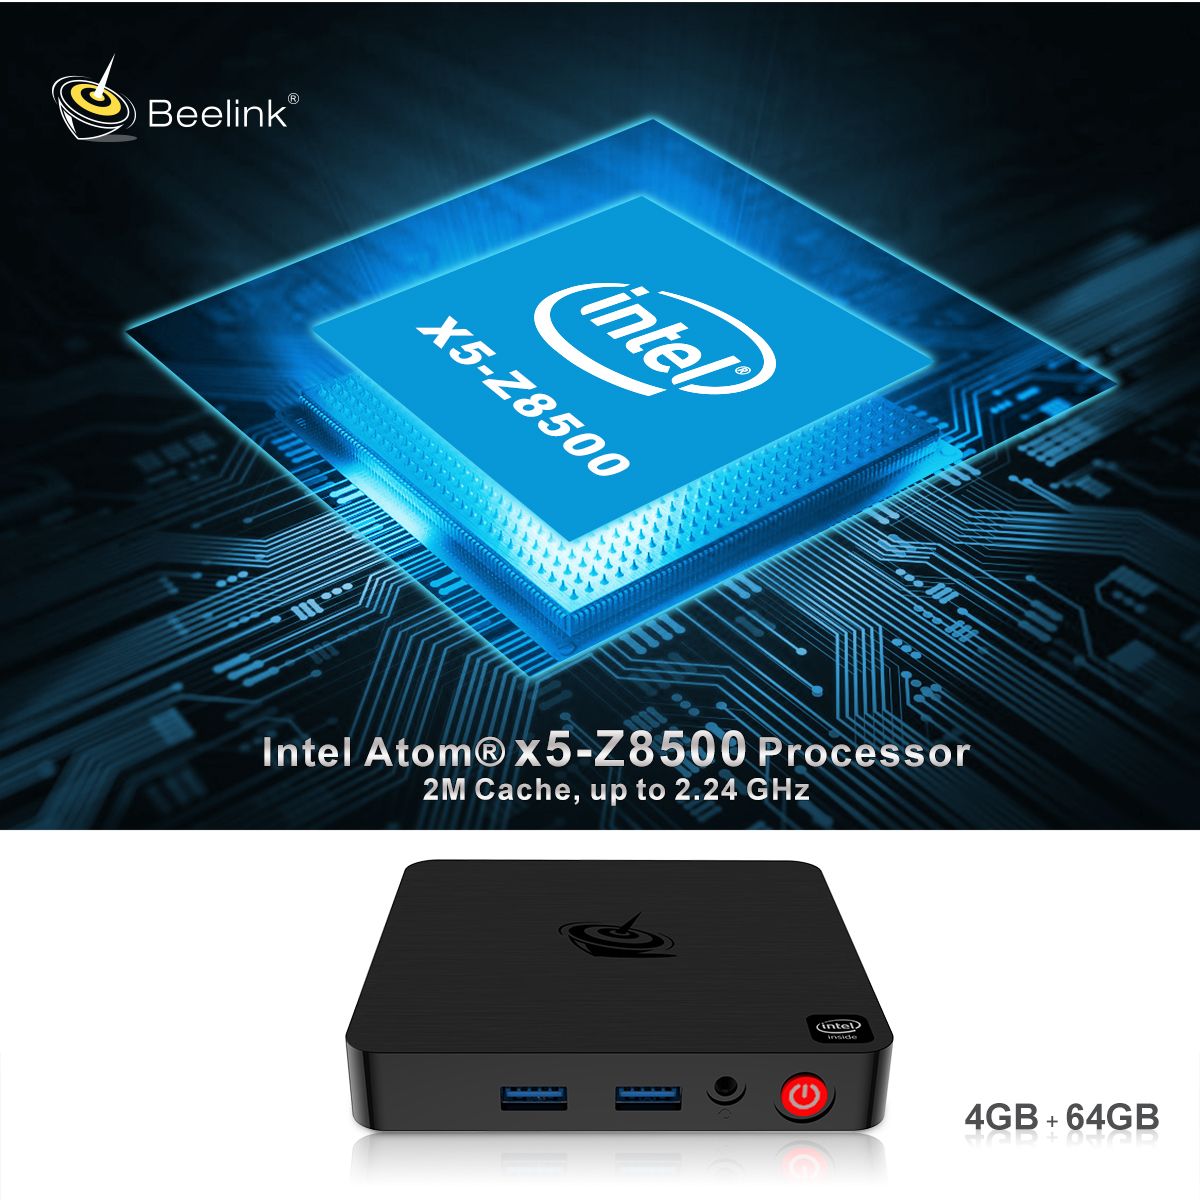 Beelink-T4-Intel-Atom-X5-Z8500-4GB-RAM-64GB-ROM-1000M-LAN-58G-WiFi-bluetooth-40-USB-30-Windows-10-Mi-1681888